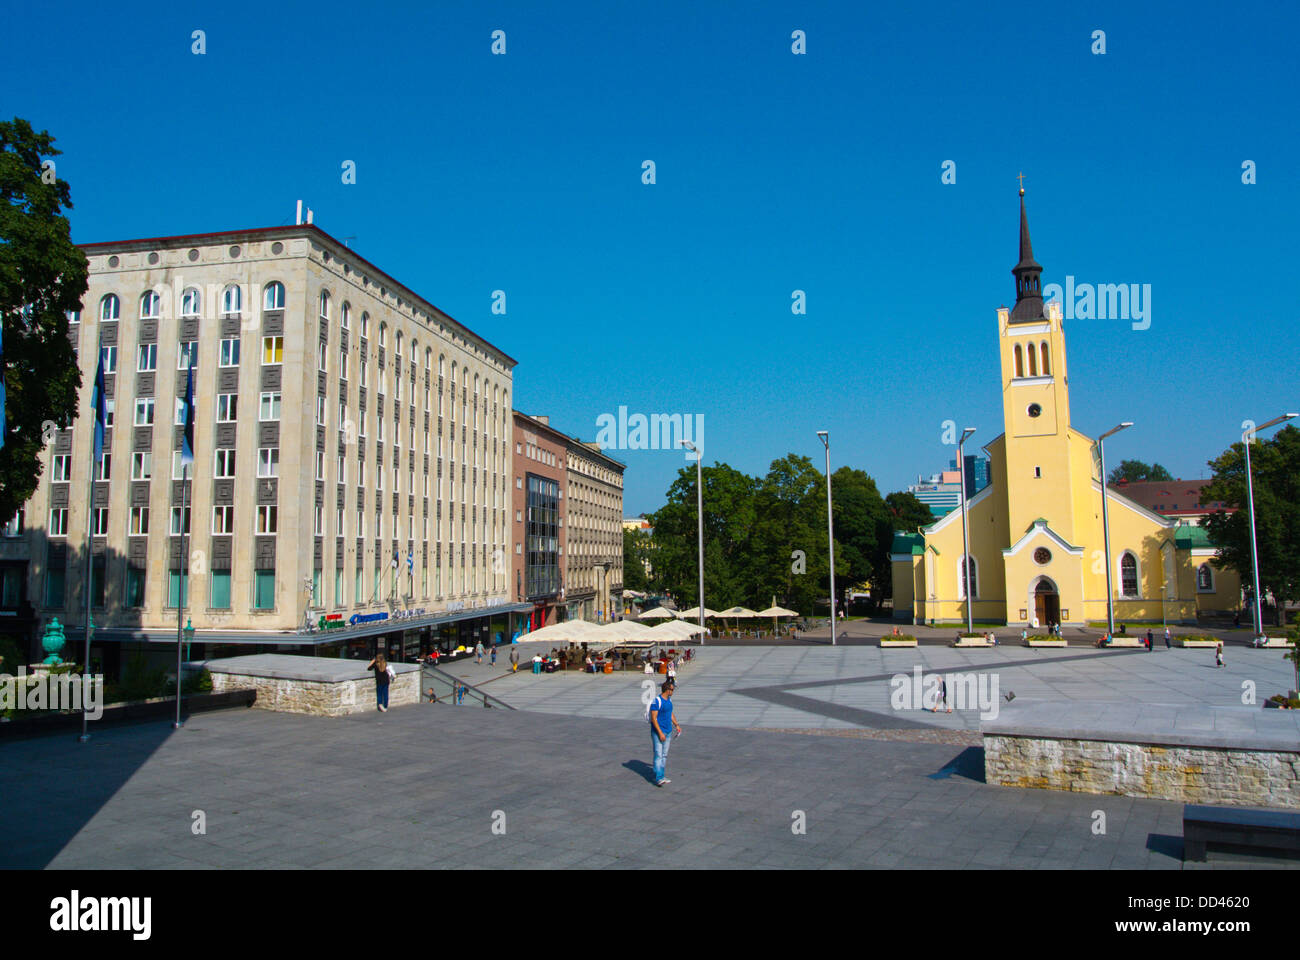 Vabaduse väljak the Freedom square Tallinn Estonia the Baltics Europe Stock Photo